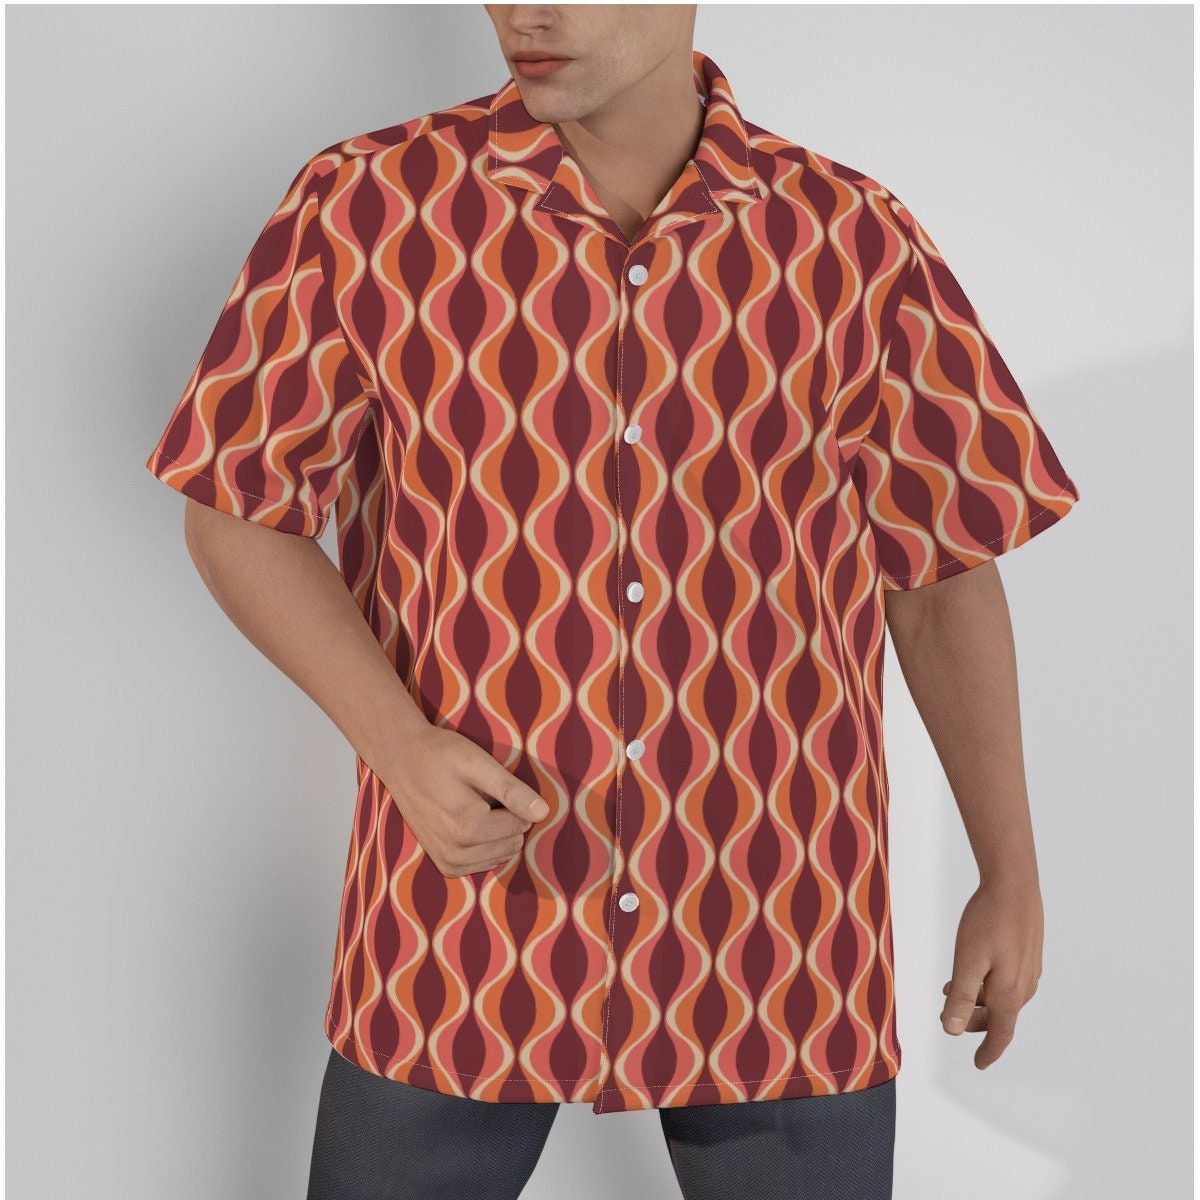 Chemise rétro hommes, haut rétro, haut de style du milieu du siècle, chemise de style Mod des années 60, haut de style vintage, chemise marron, chemise hawaïenne, chemise habillée